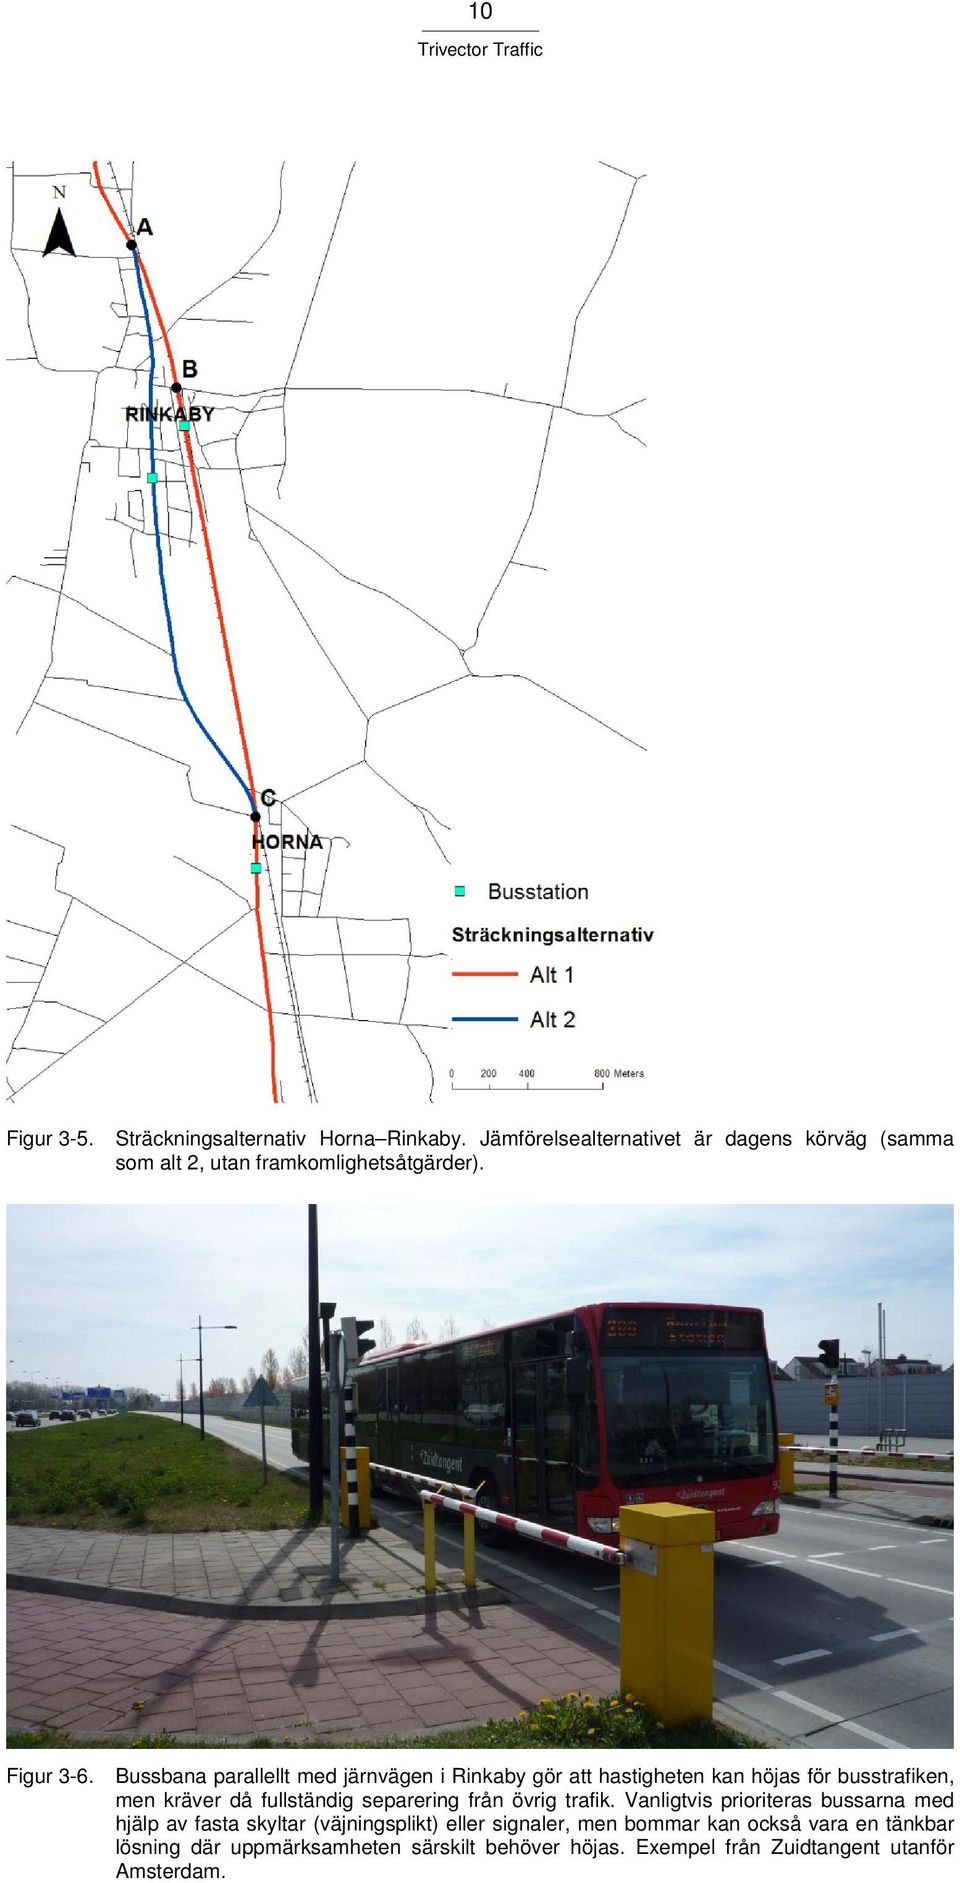 Bussbana parallellt med järnvägen i Rinkaby gör att hastigheten kan höjas för busstrafiken, men kräver då fullständig separering